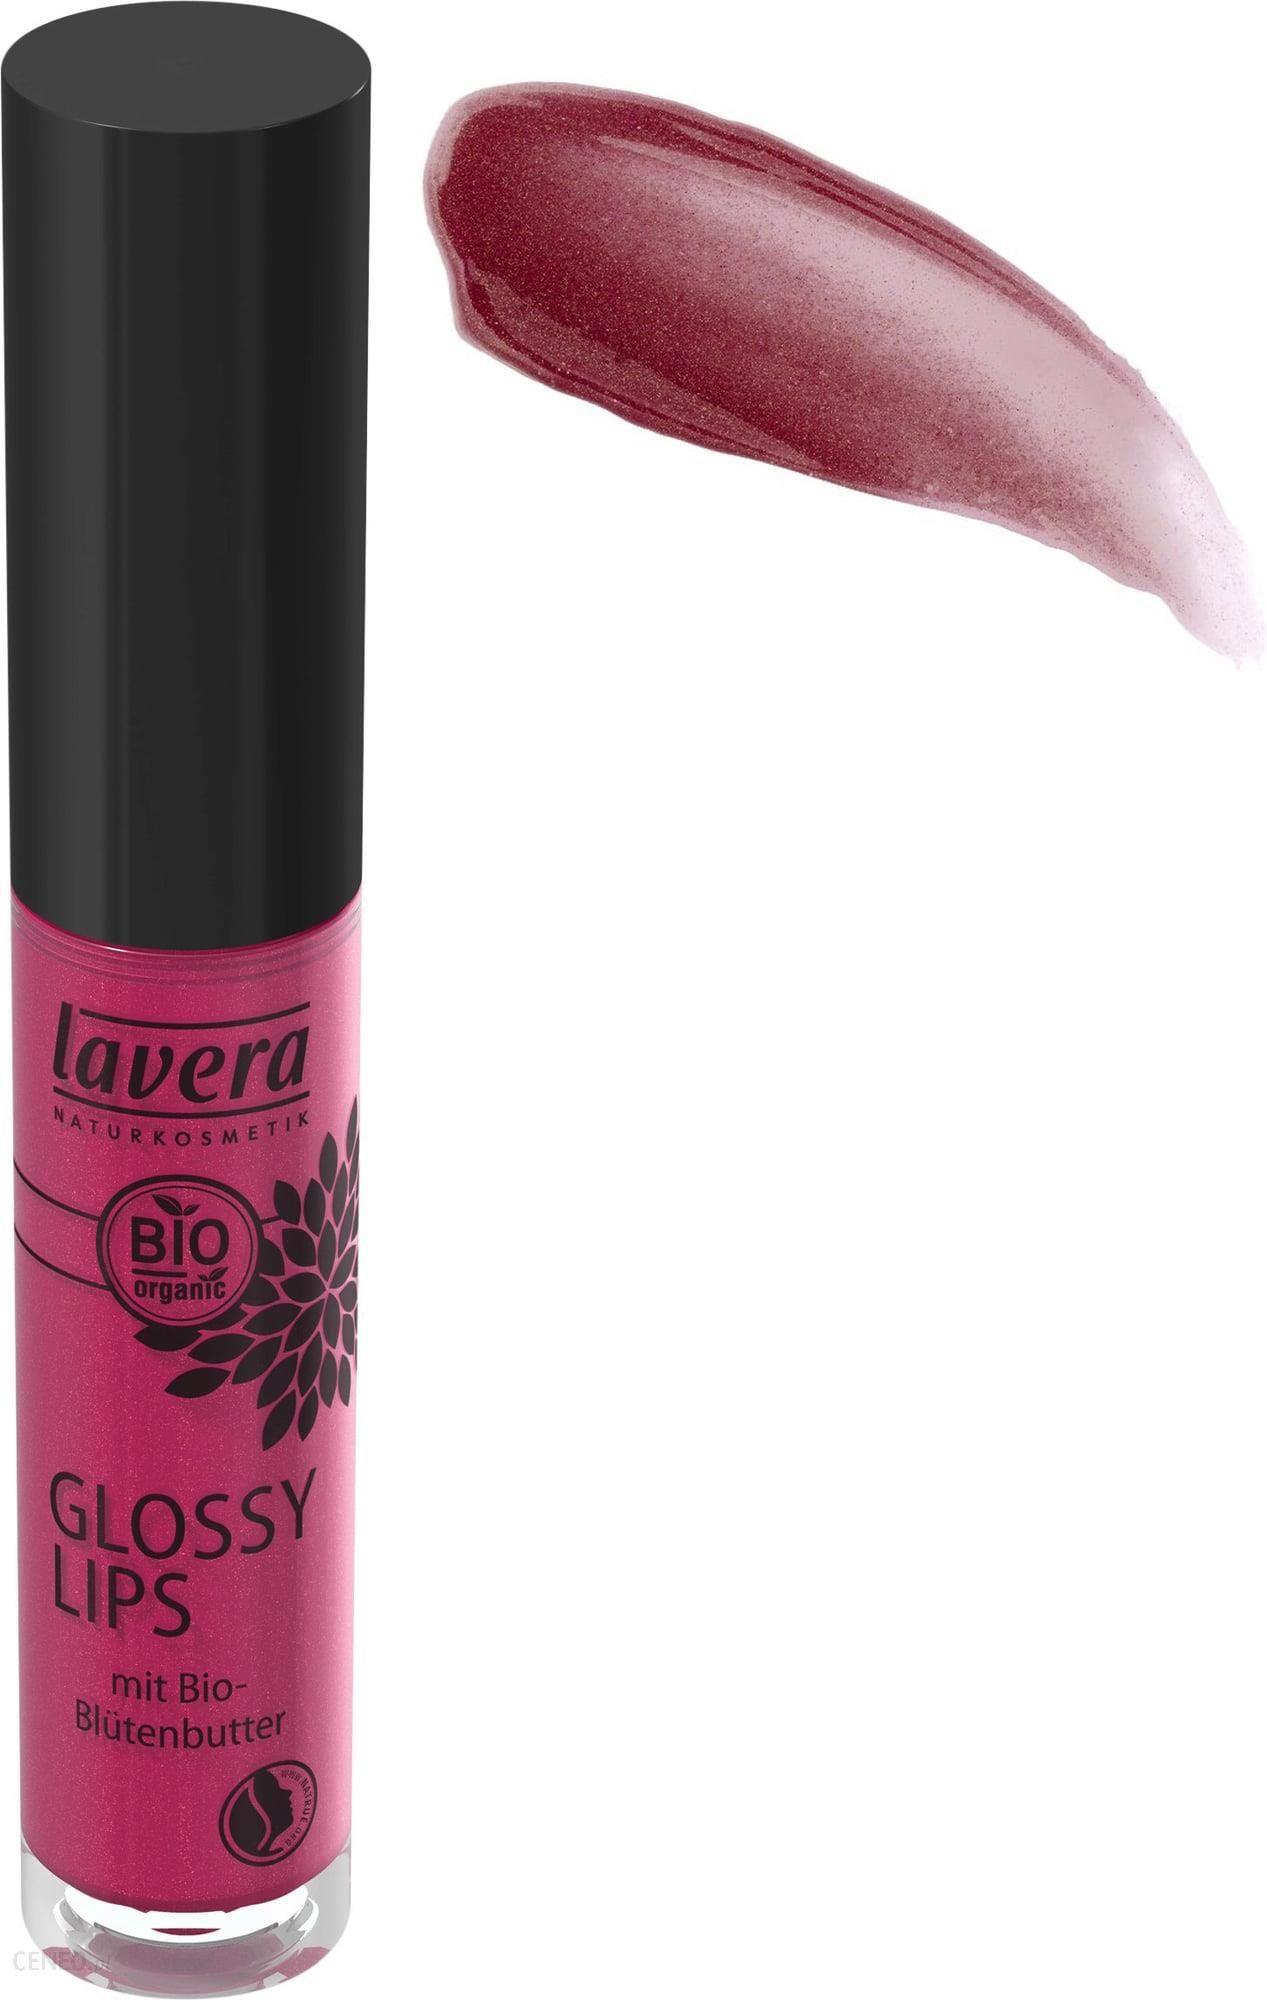 Блеск для губ glossier. Lavera помада. Ines Cosmetics / блеск для губ Glossy Lips. Magic Lip Gloss. Beauty model Magic Lip Gloss.